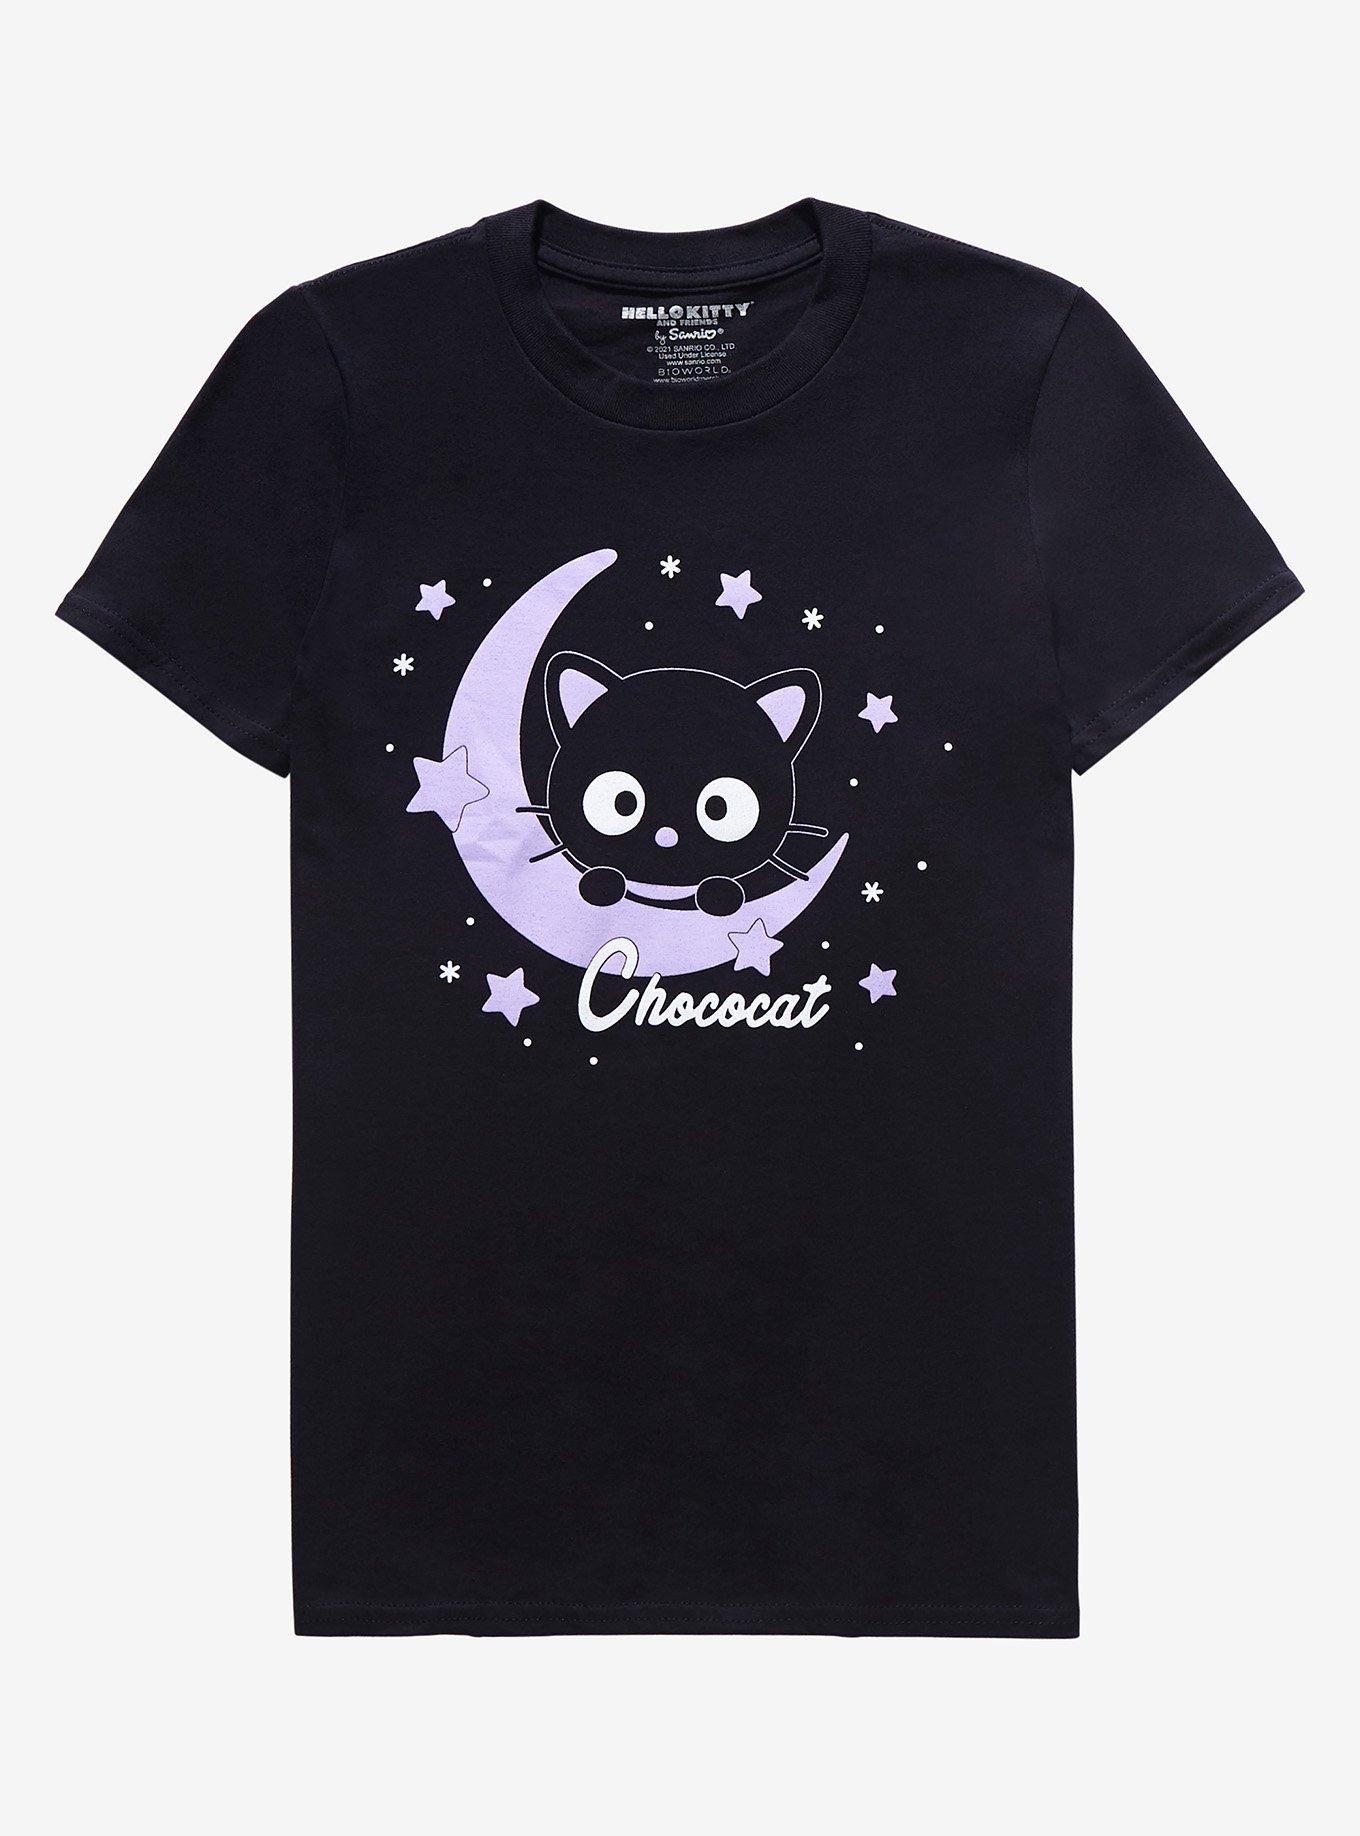 Chococat Moon & Stars Boyfriend Fit Girls T-Shirt | Hot Topic